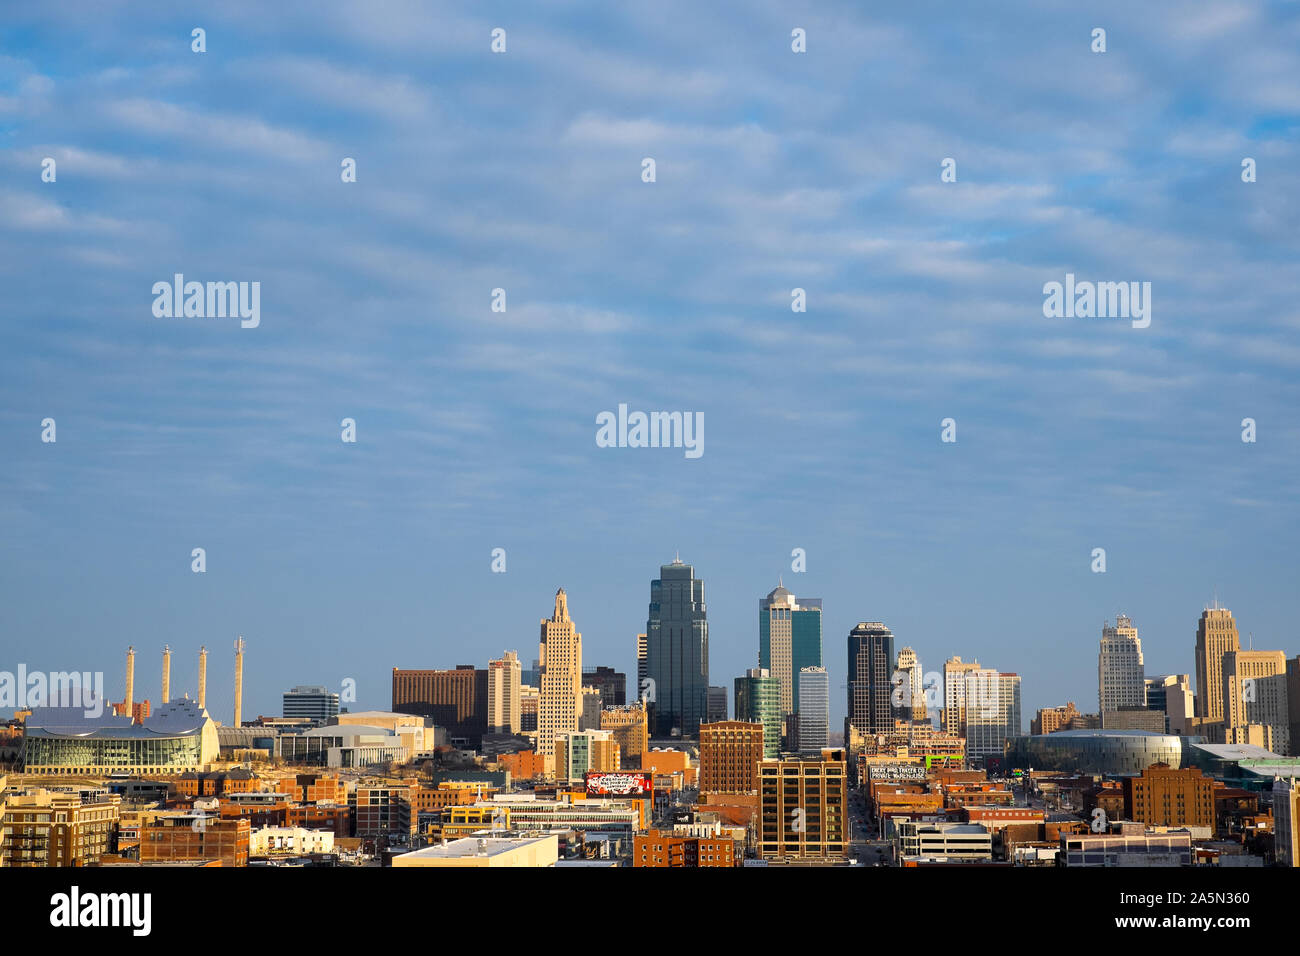 Au-dessus de la prairie du Midwest, The Kansas City skyline accentue cette métropole en croissance. Banque D'Images